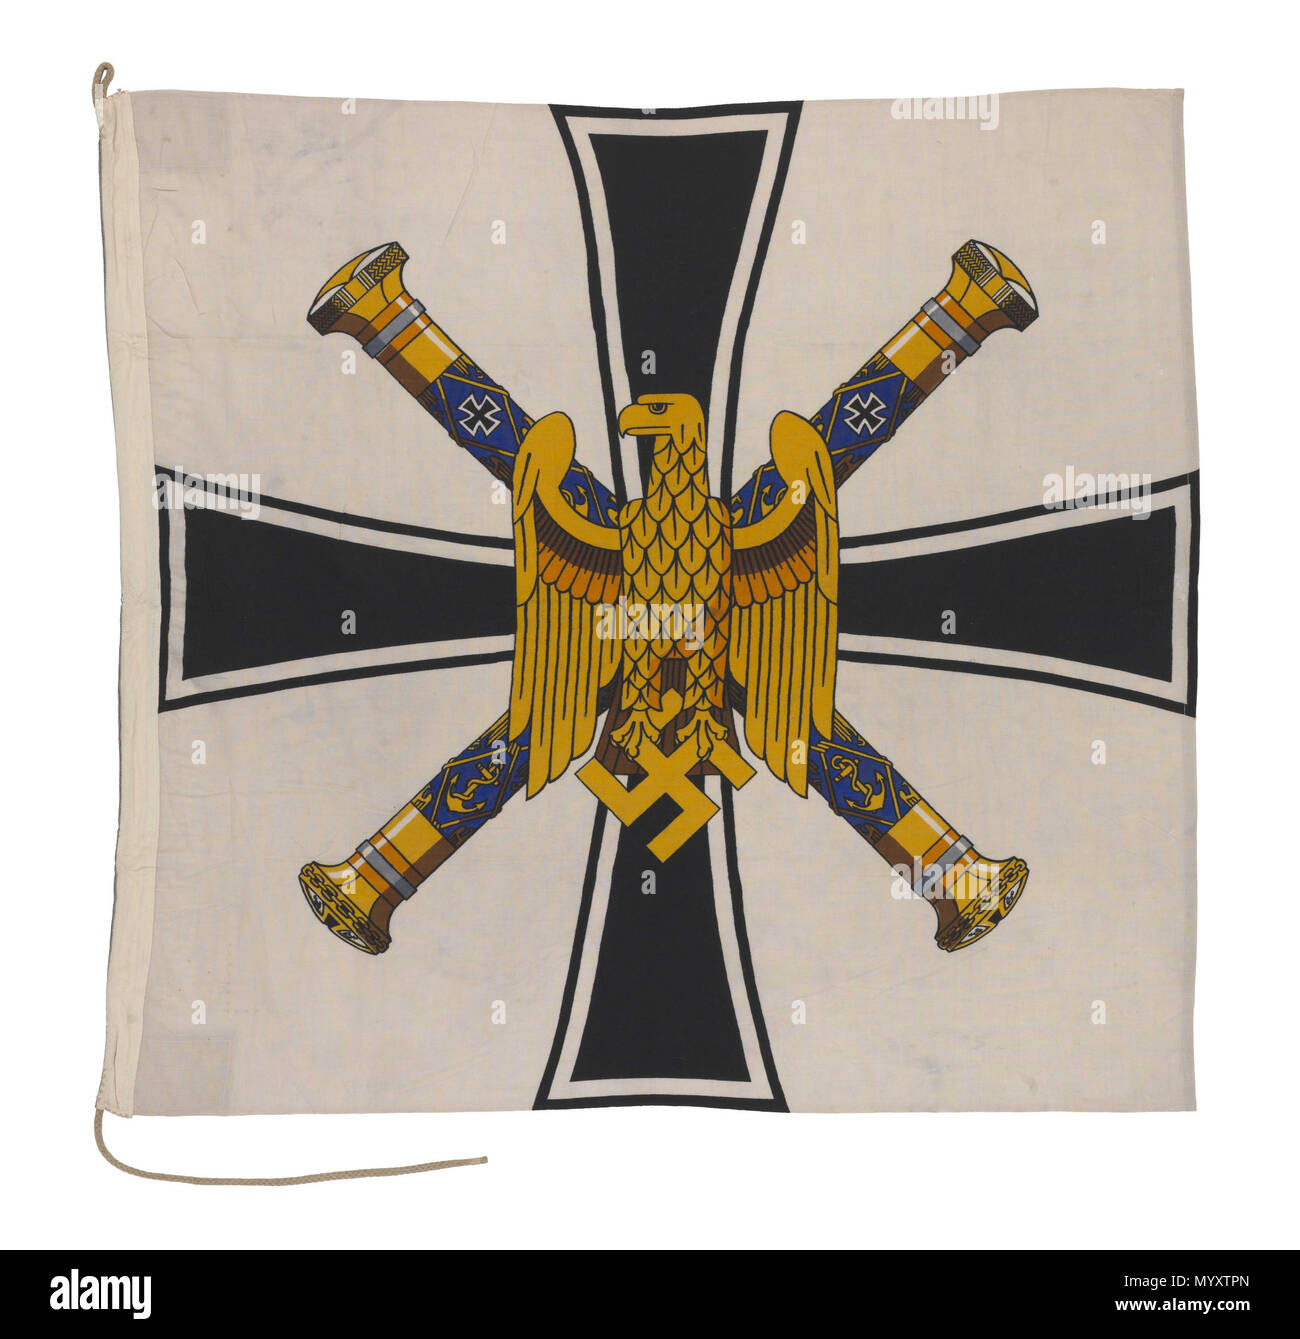 . Anglais : commande drapeau, amiral de la flotte, l'Allemagne nazie (1943-1945) Amiral de la flotte le drapeau de la commande de l'Allemagne nazie dans le modèle 1943-45. Sur le palan est inscrit : 'Flg Grossadmiral 1,5 x 1, 5.' Le drapeau est fait de laine noir avec un palan, coton cousu machine avec le dessin imprimé sur le tissu. Une corde est attachée à hisser le drapeau. Elle a un champ blanc, portant une croix de fer noir sur lequel se superpose deux traversé l'admiral's matraque et un aigle tenant la croix gammée. Indicateur de commande, amiral de la flotte, l'Allemagne nazie (1943-1945) . Entre 1943 et 1945. Inconnu 23 fla Commande Banque D'Images